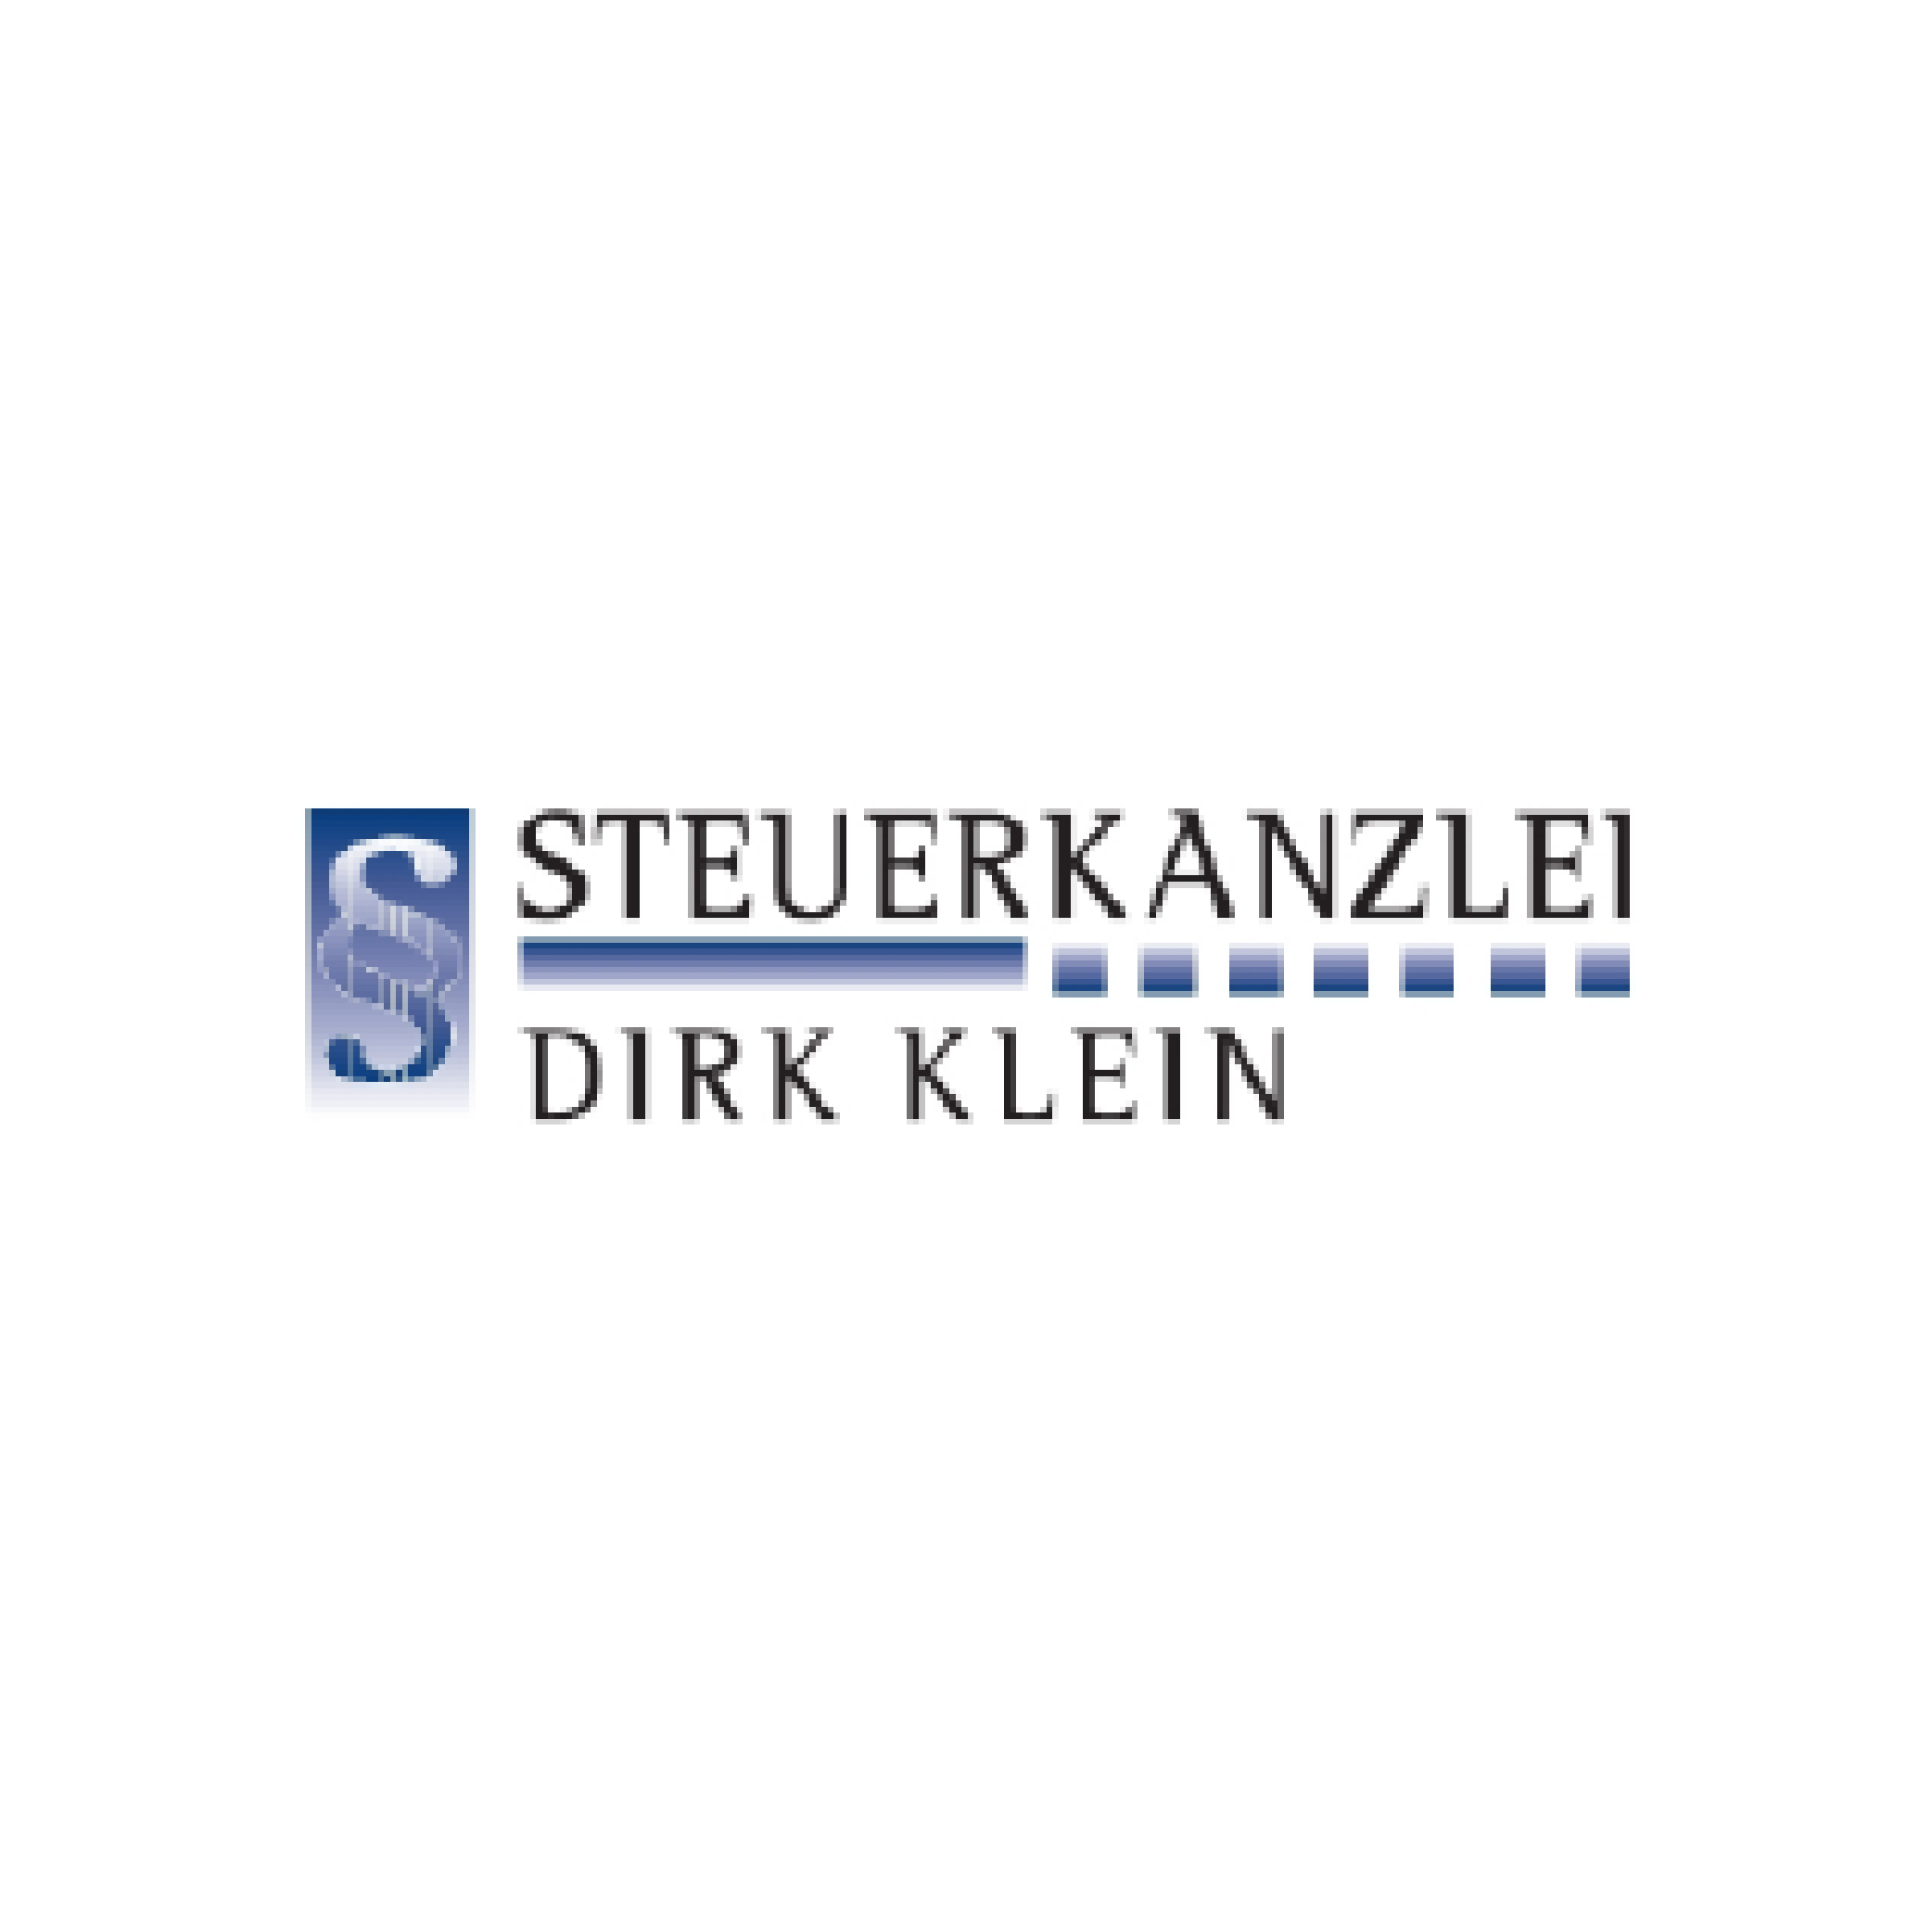 Steuerkanzlei Dirk Klein